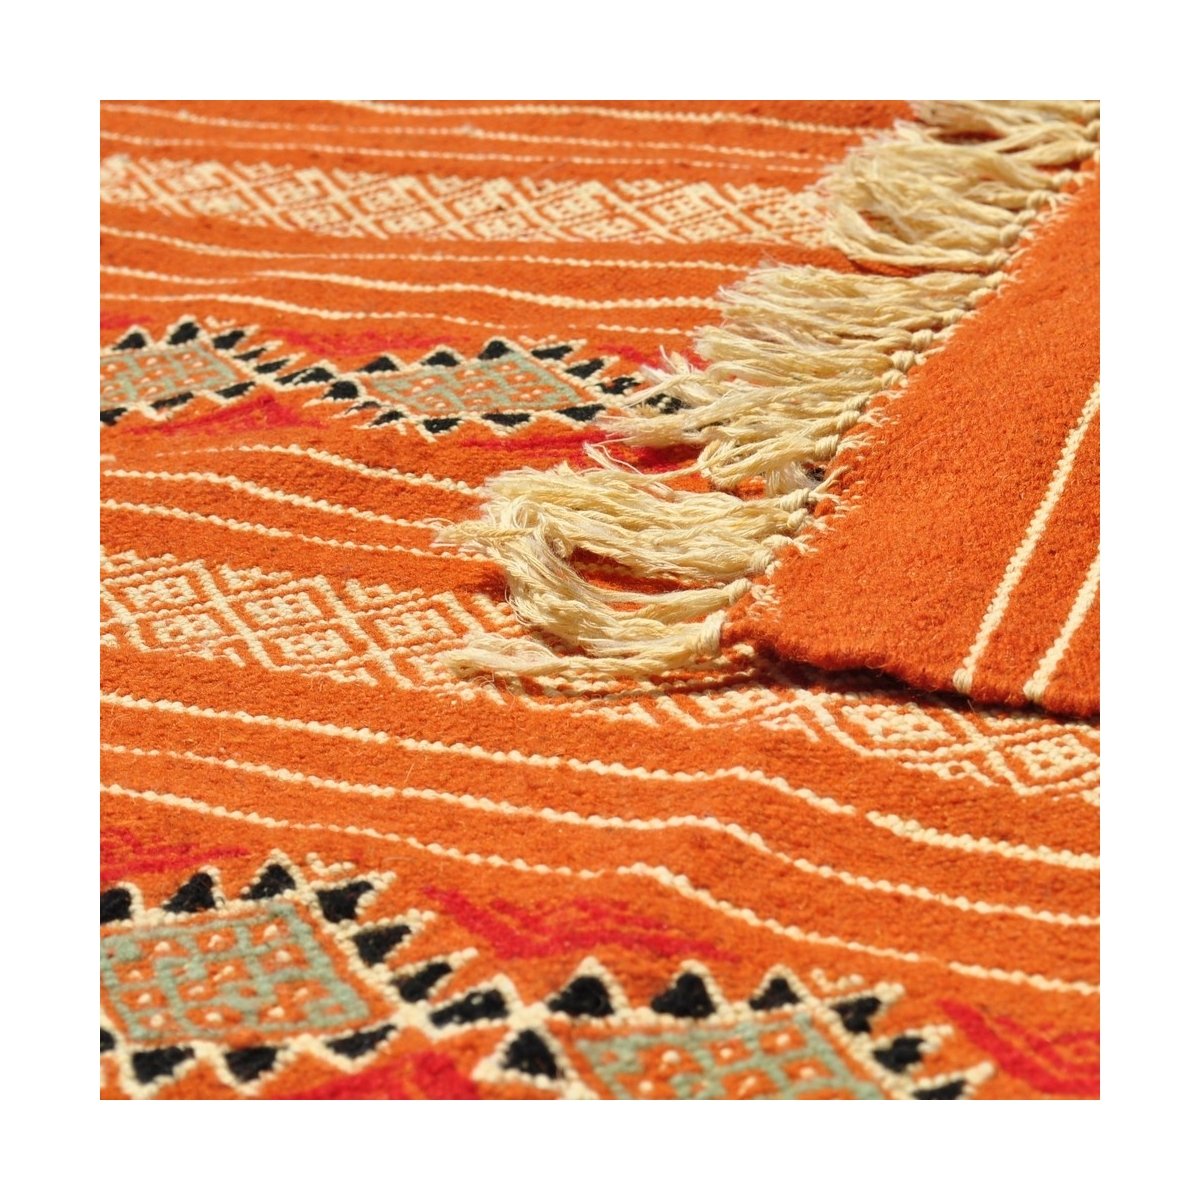 Berber Teppich Teppich Kelim El Mida 135x245 Orange/Blau (Handgewebt, Wolle) Tunesischer Kelim-Teppich im marokkanischen Stil. R